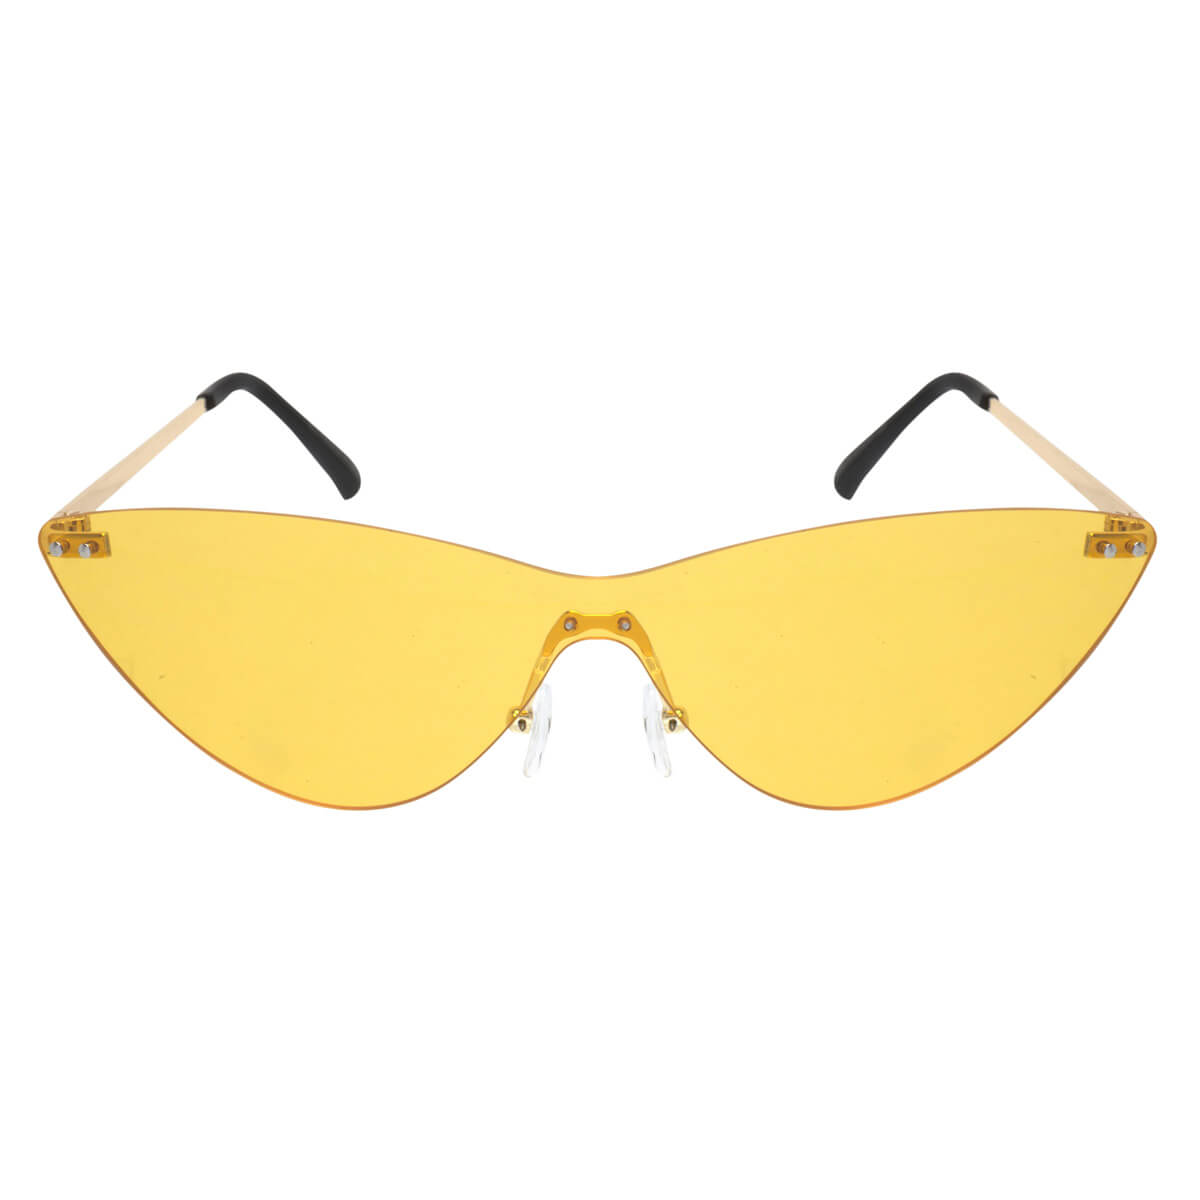 Catlike single lens sunglasses